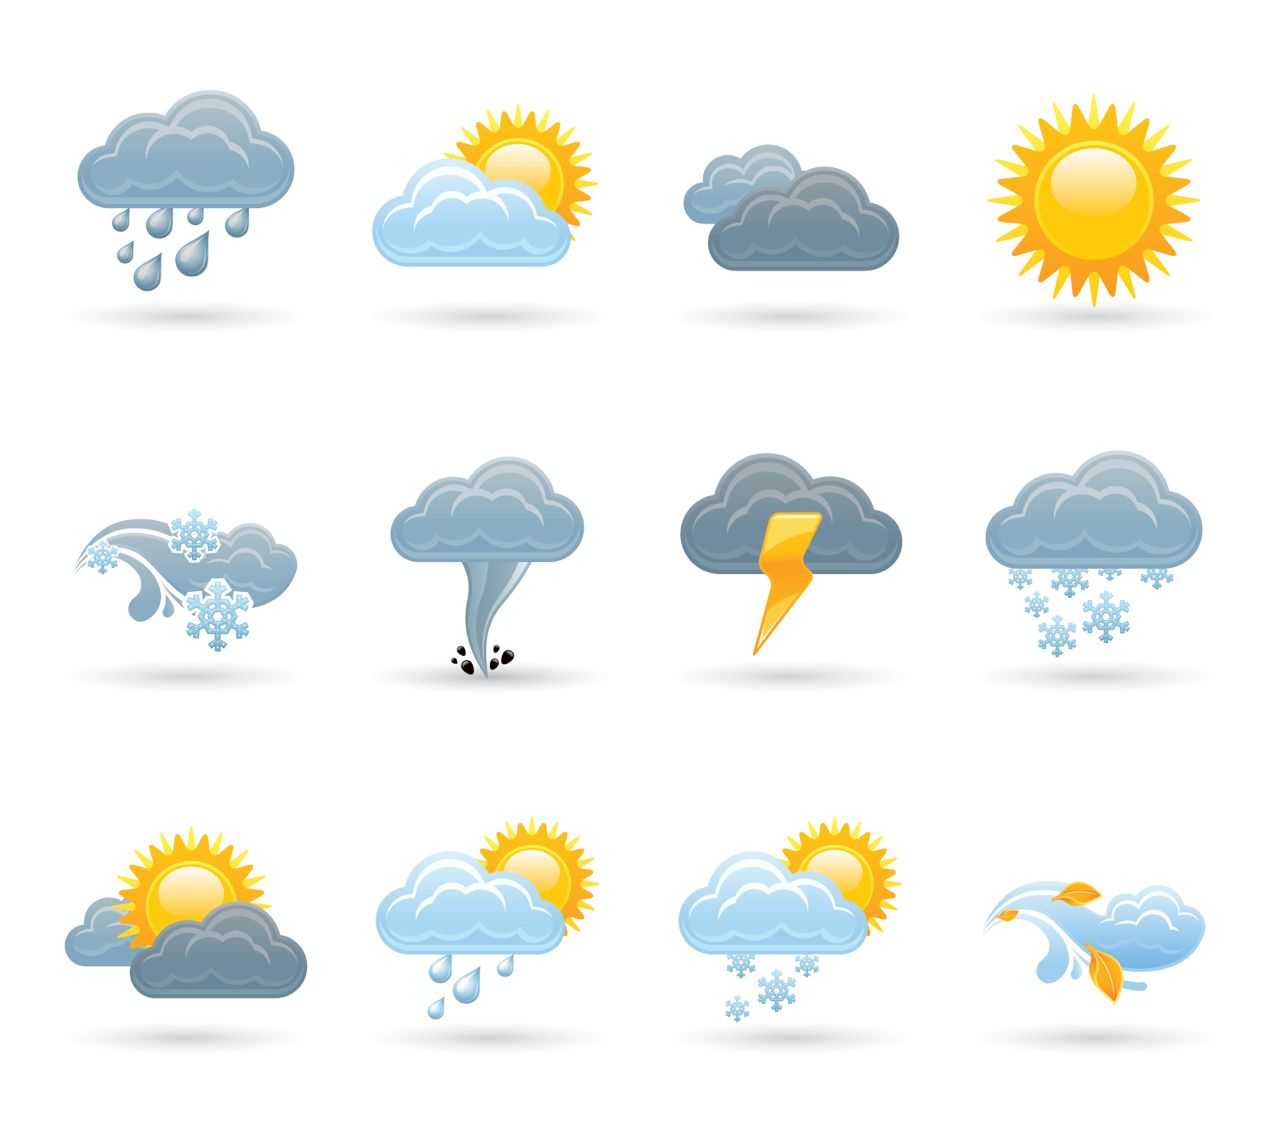 Weather For Ks1 And Ks2 Children | Weather Homework Help Regarding Kids Weather Report Template